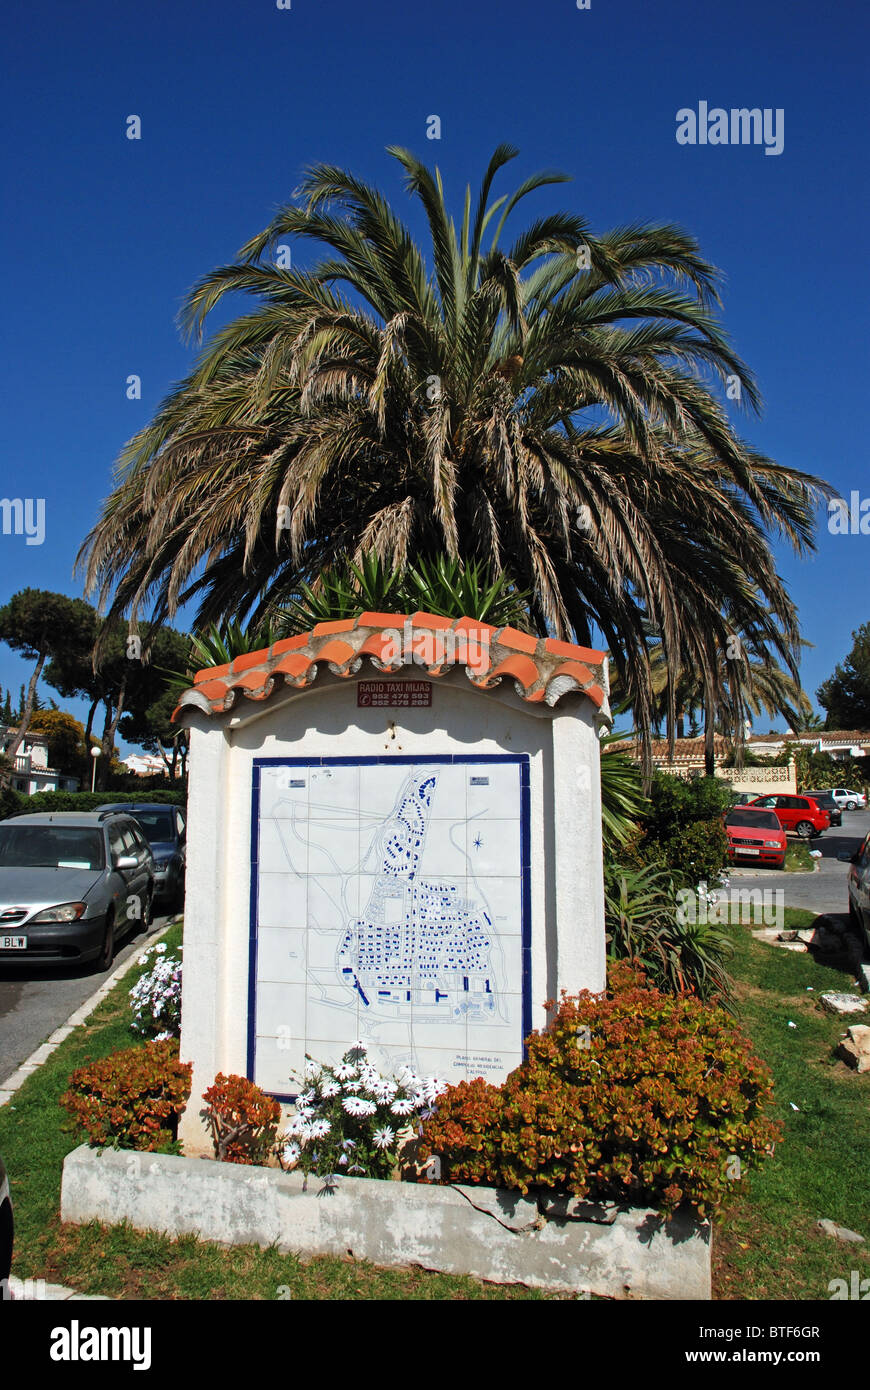 Ceramic urbanisation plan, Urb, Calypso, Sitio de Calahonda, Mijas Costa, Costa del Sol, Malaga Province, Andalucia, Spain. Stock Photo